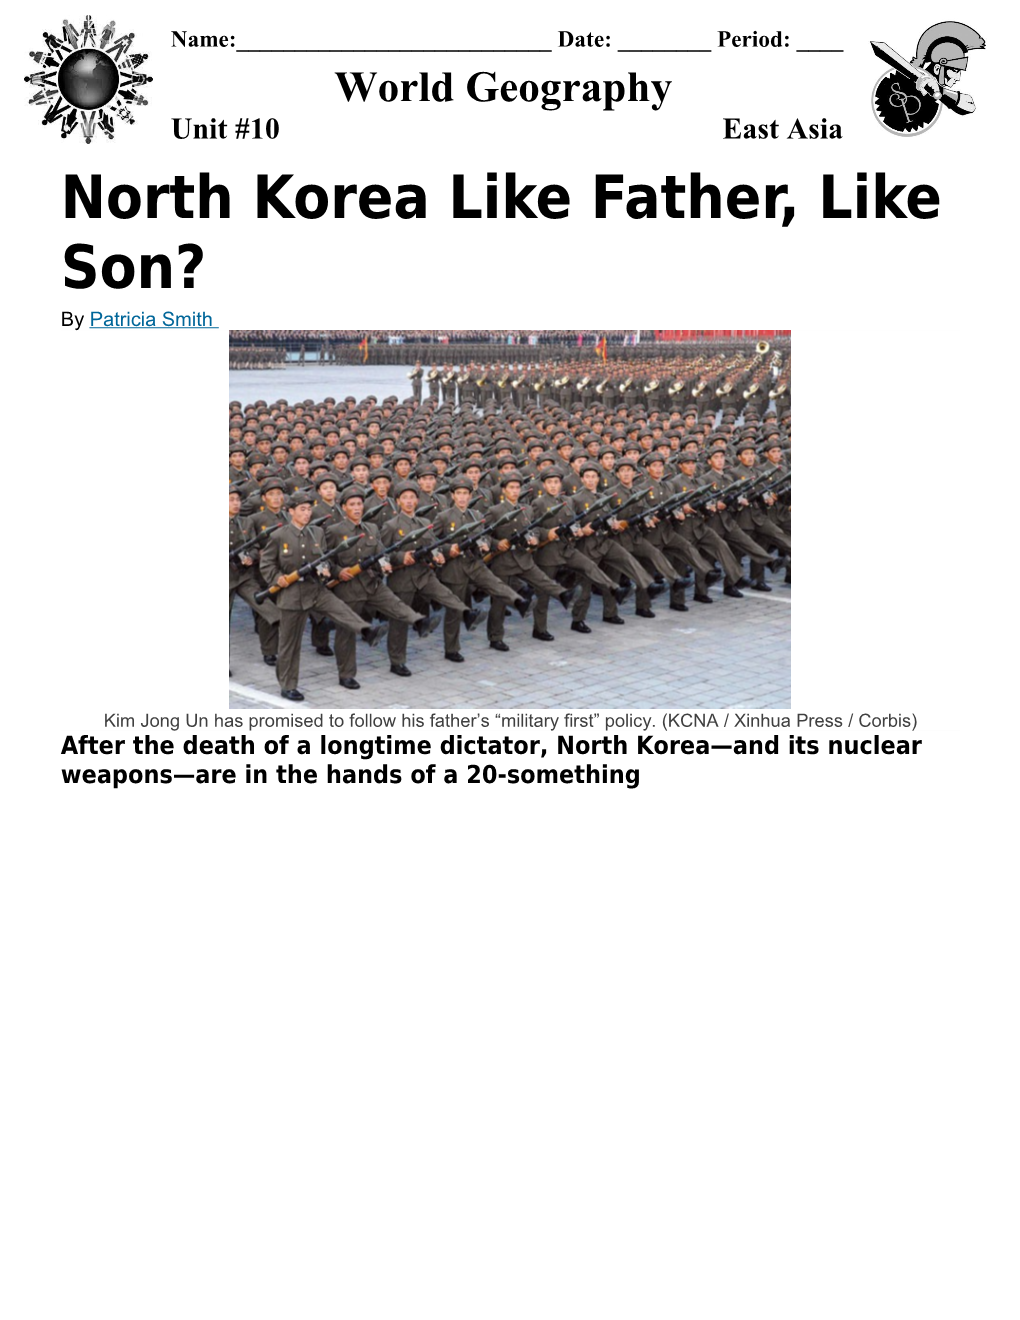 North Korea Like Father, Like Son?